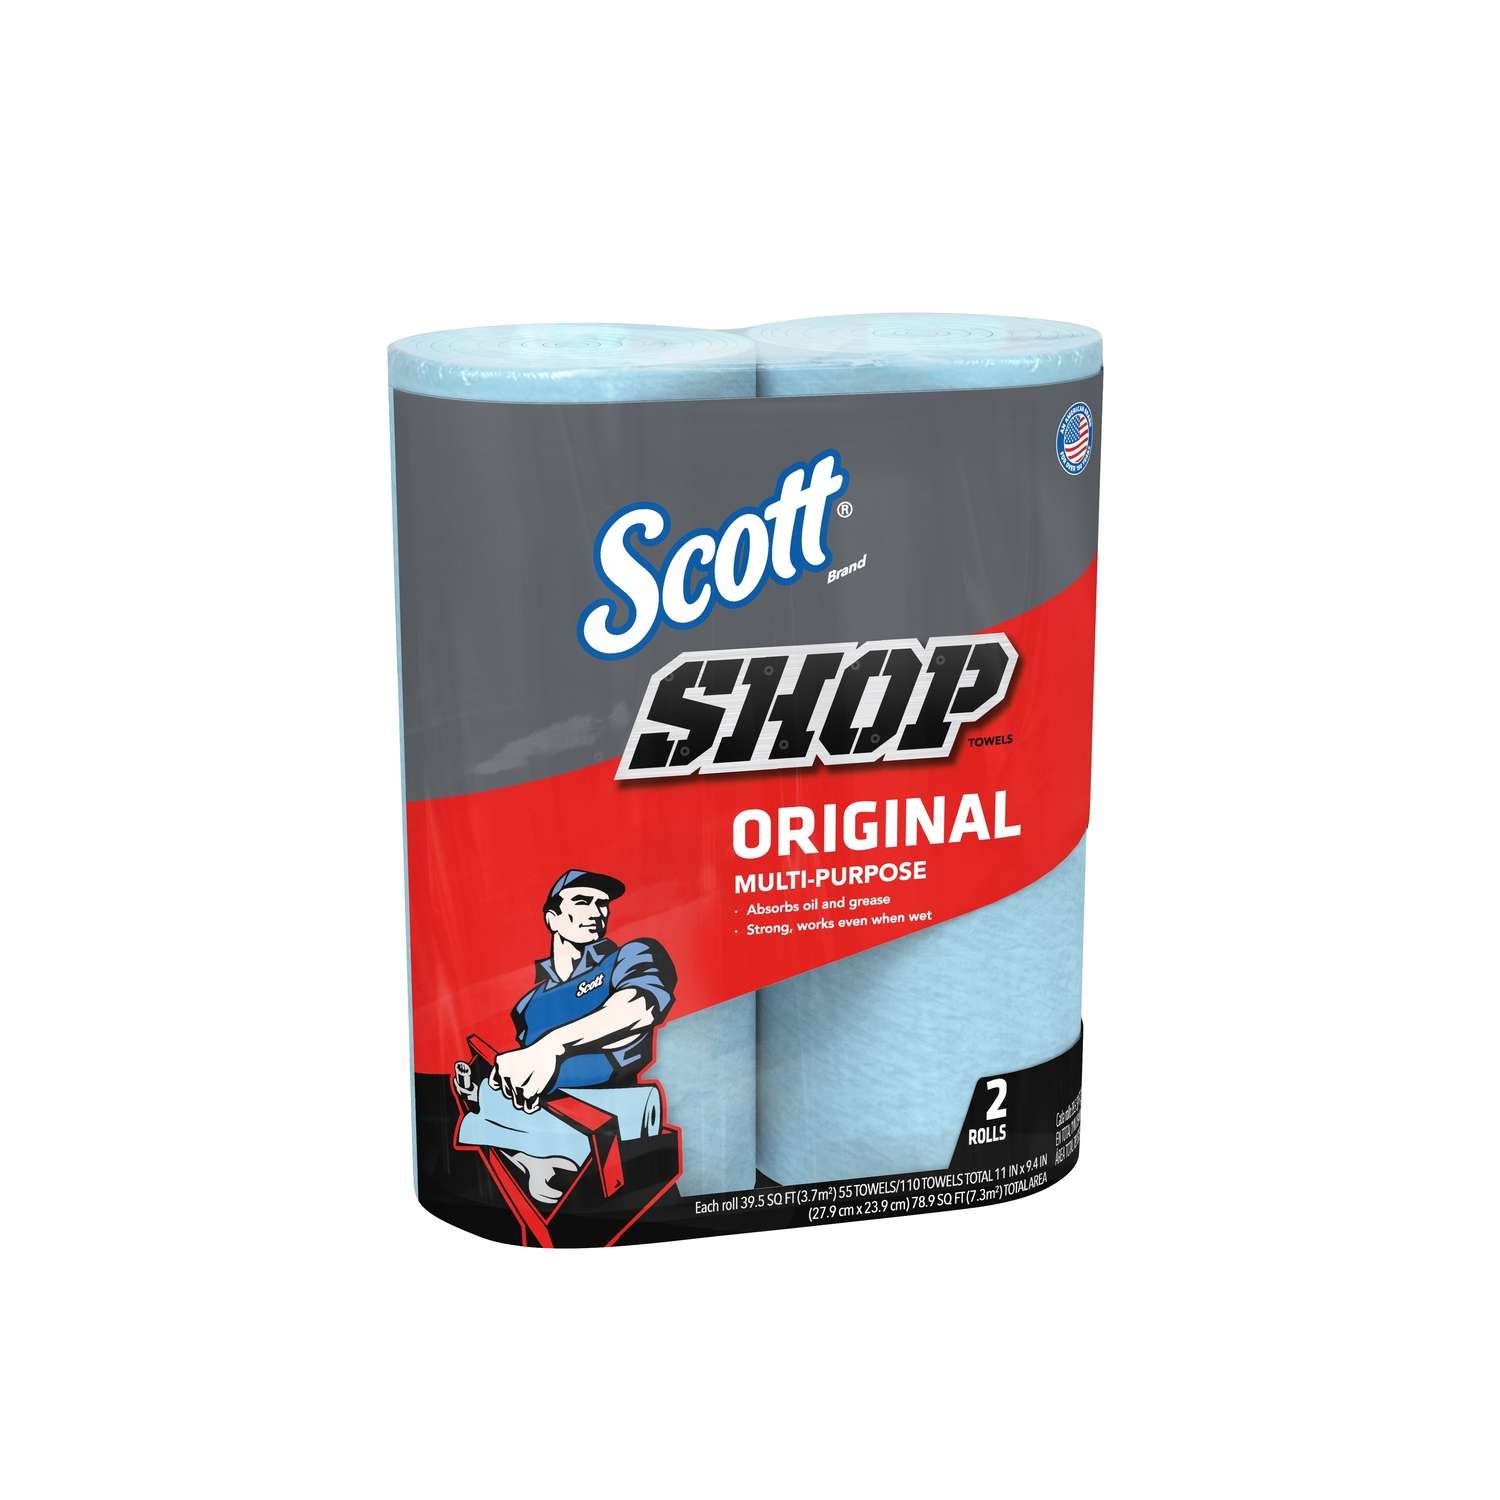 Scott Blue Original Paper Shop Towels 2 Rolls 110 Sheets 